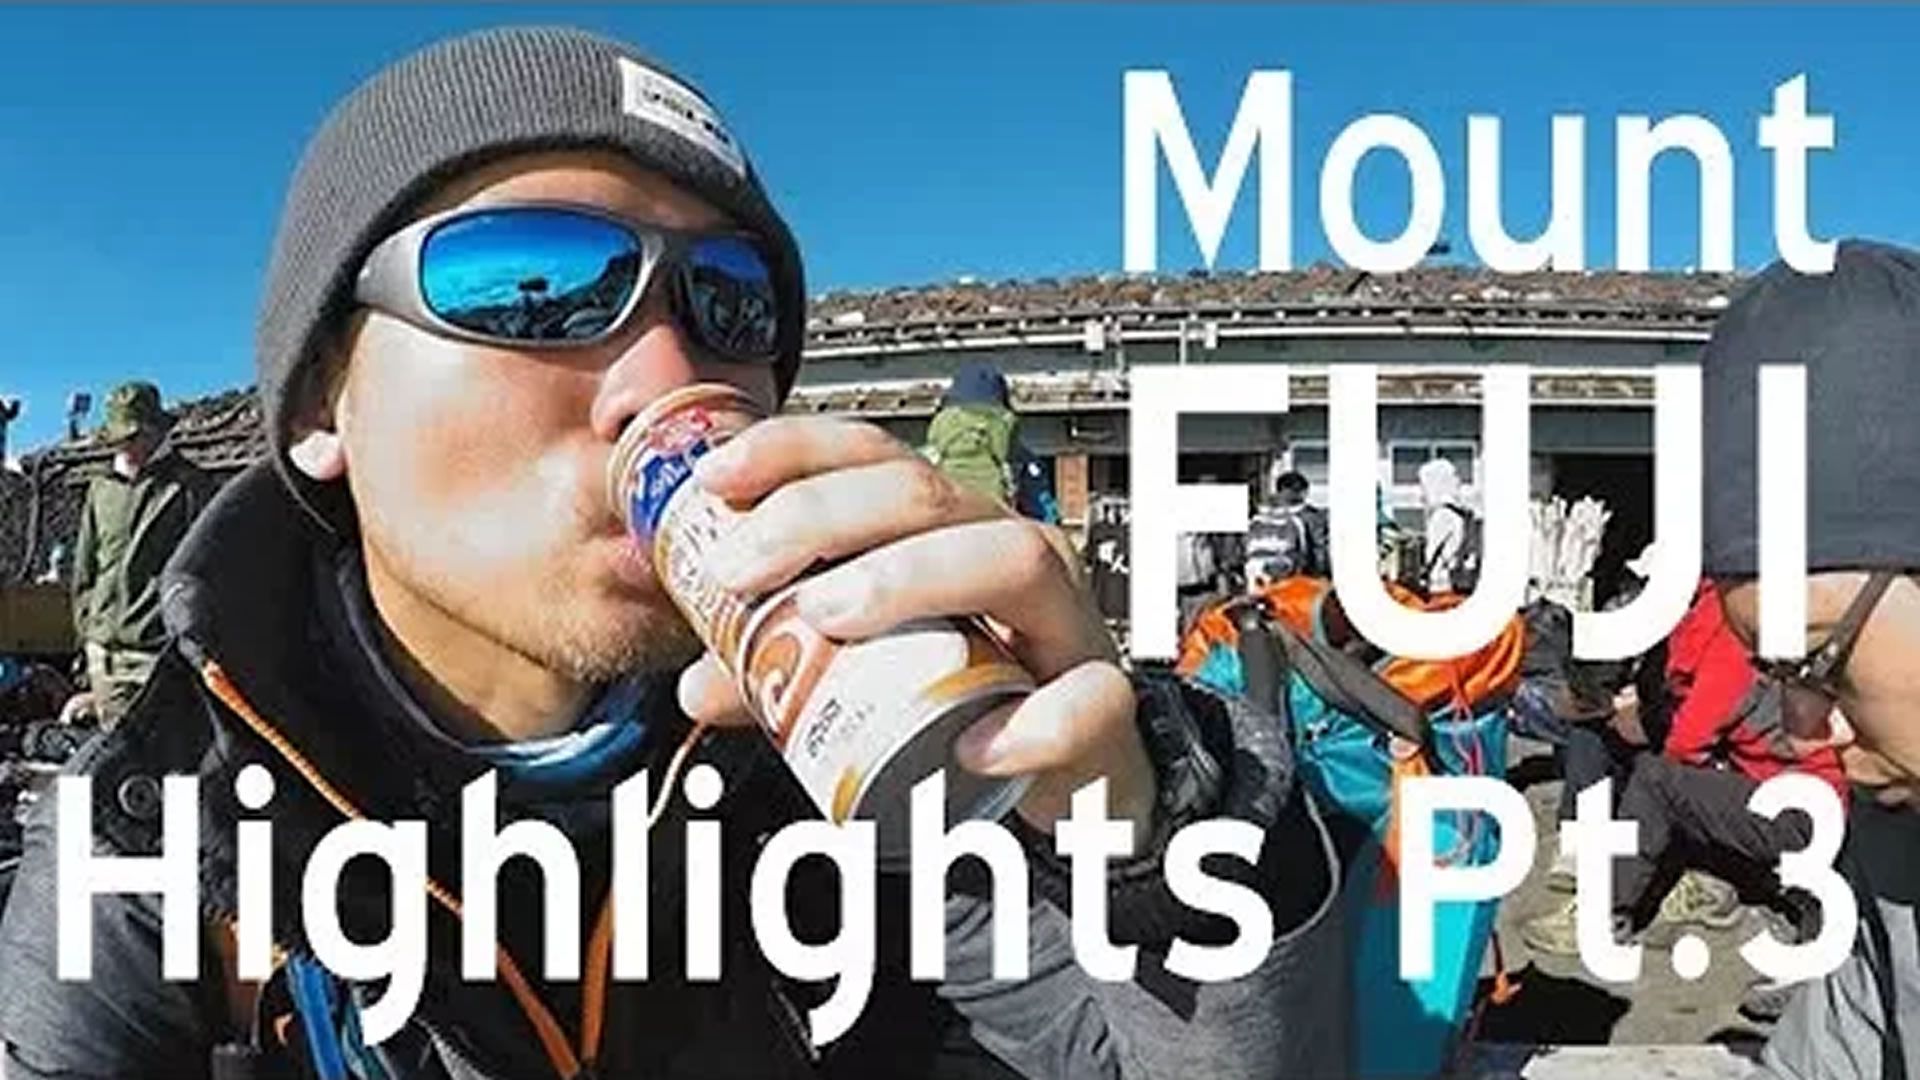 Mount Fuji 2017 Highlights - Pt.3 (Descending)